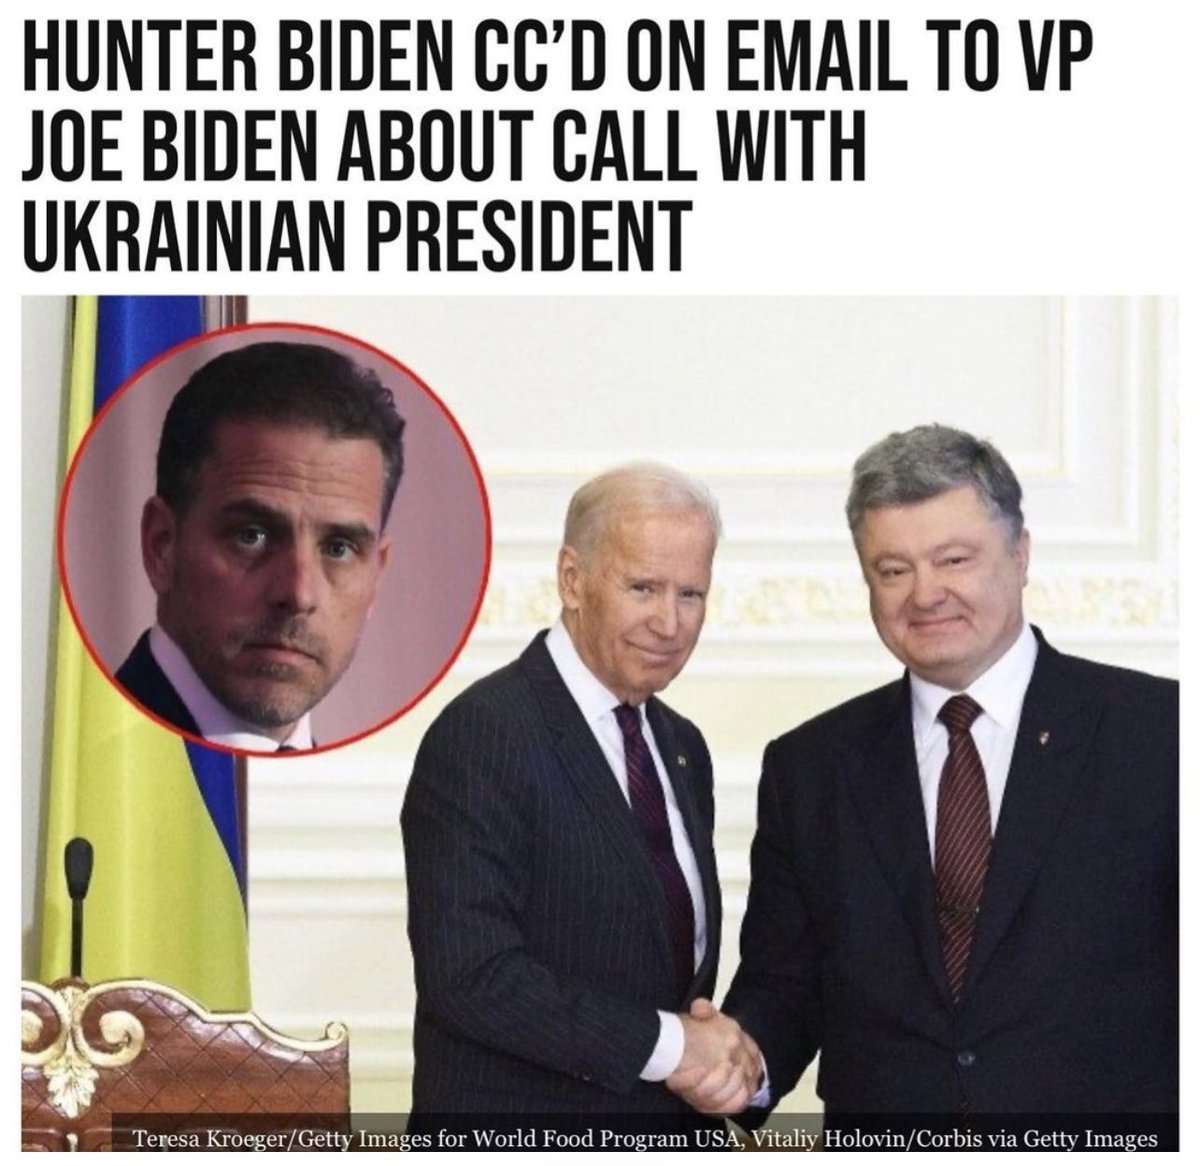 Making sense yet…? Fuck Ukraine.